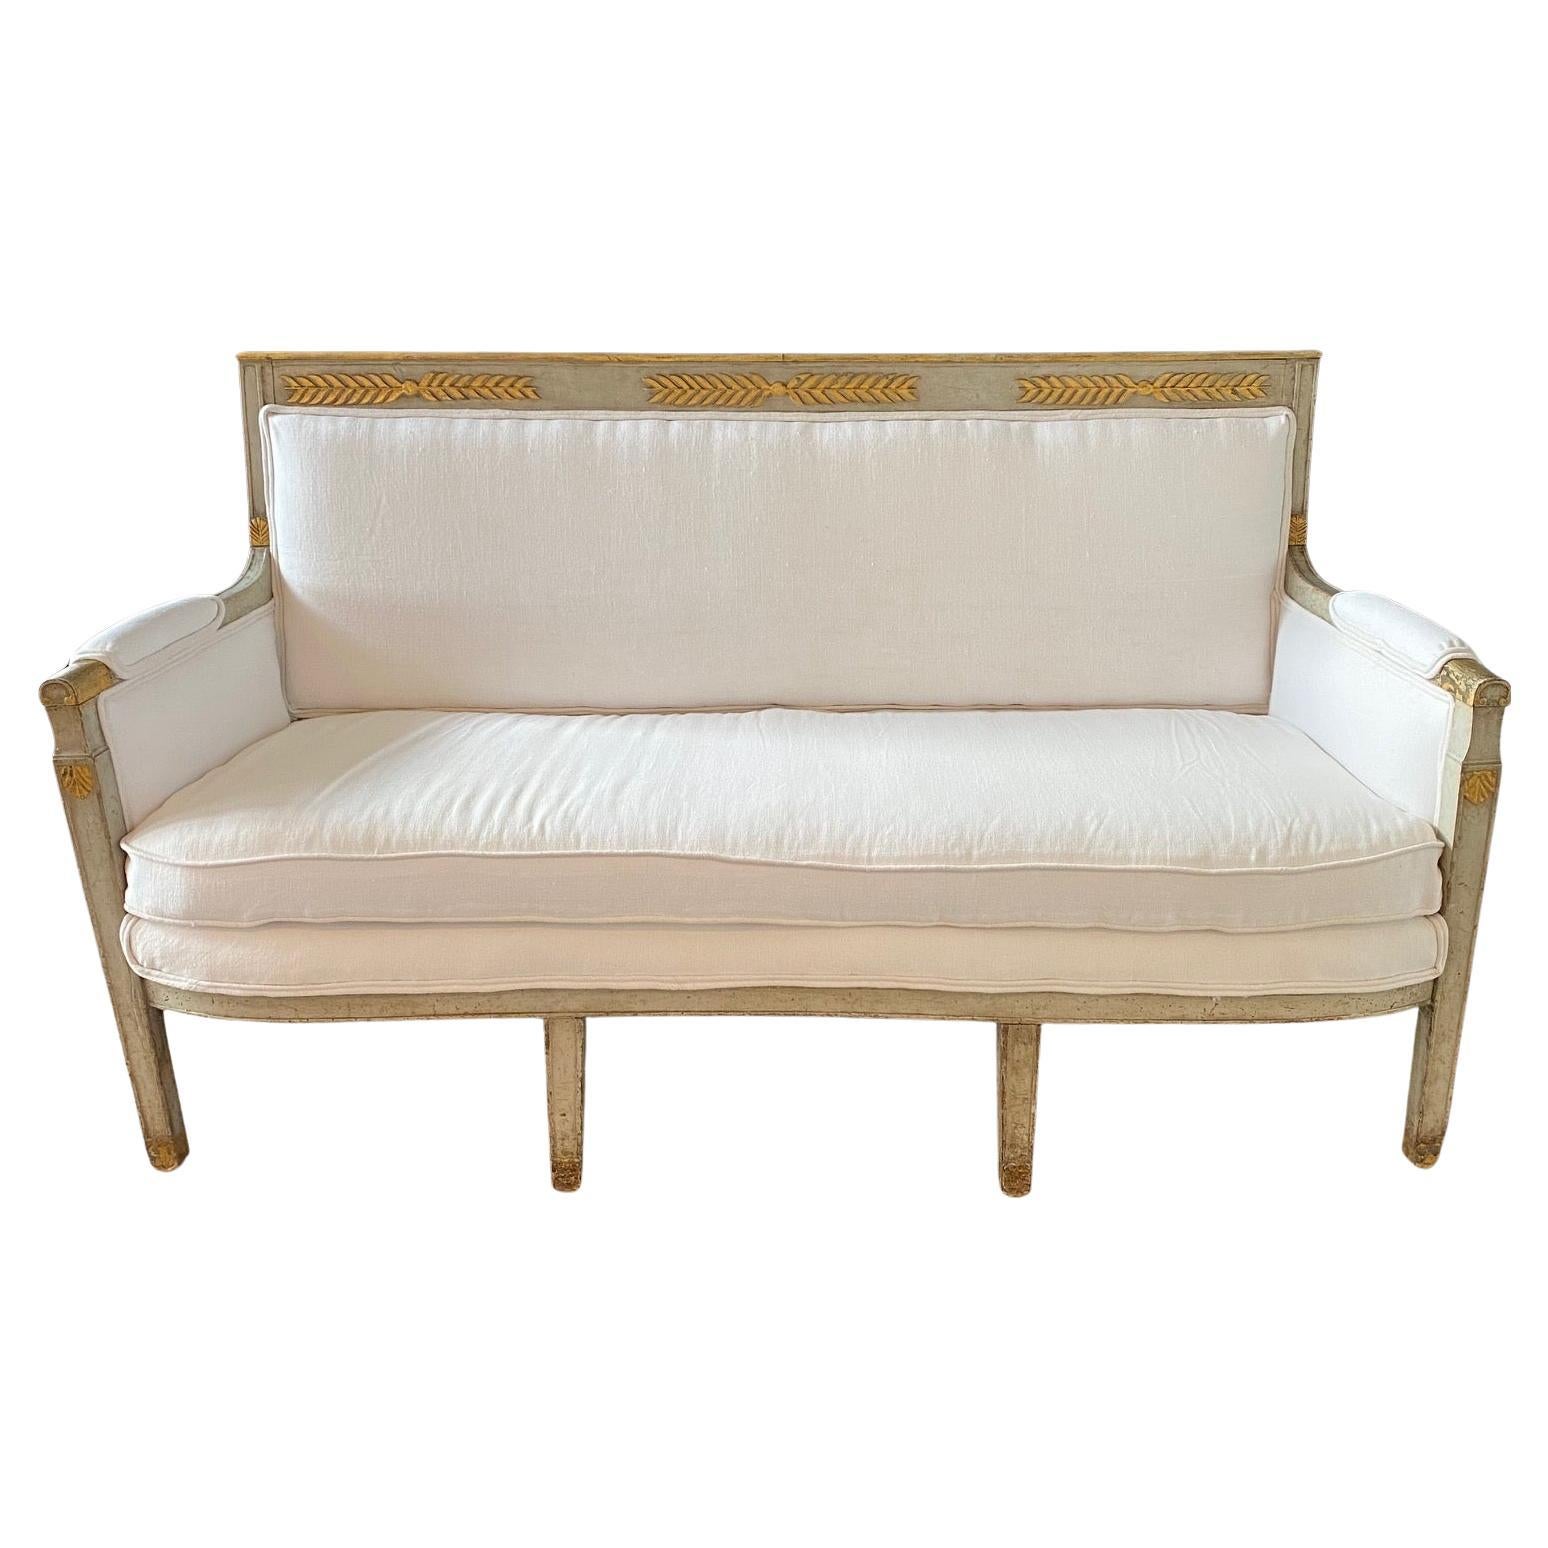 Italienisches neoklassizistisches bemaltes und teilweise vergoldetes Sofa oder Canape aus dem frühen 19. Jahrhundert